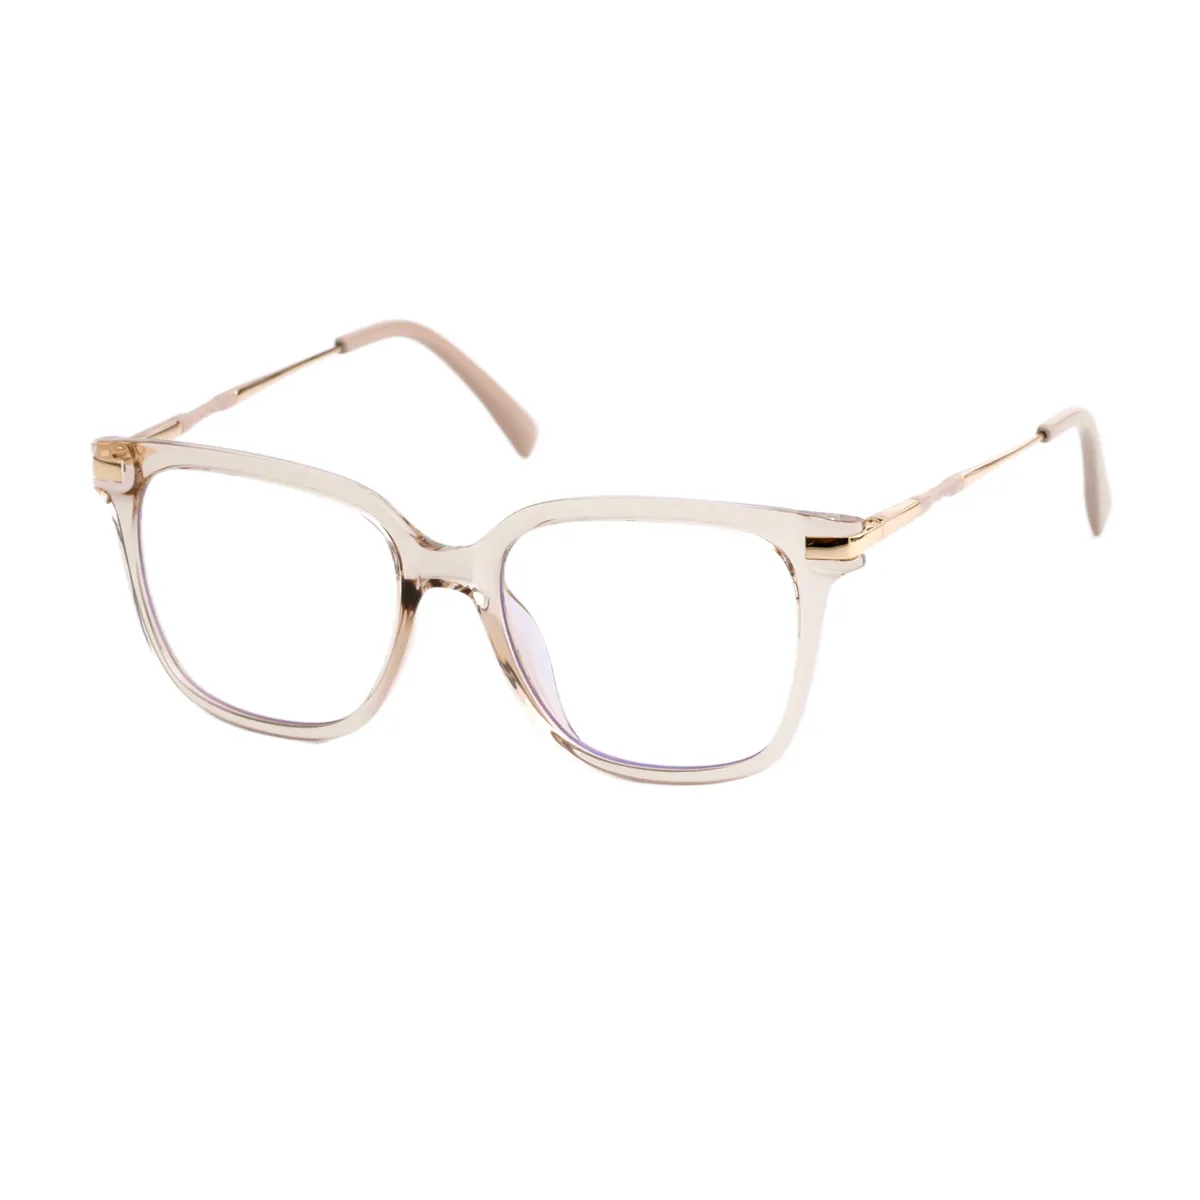 Beryl - Square Cream Glasses for Men & Women